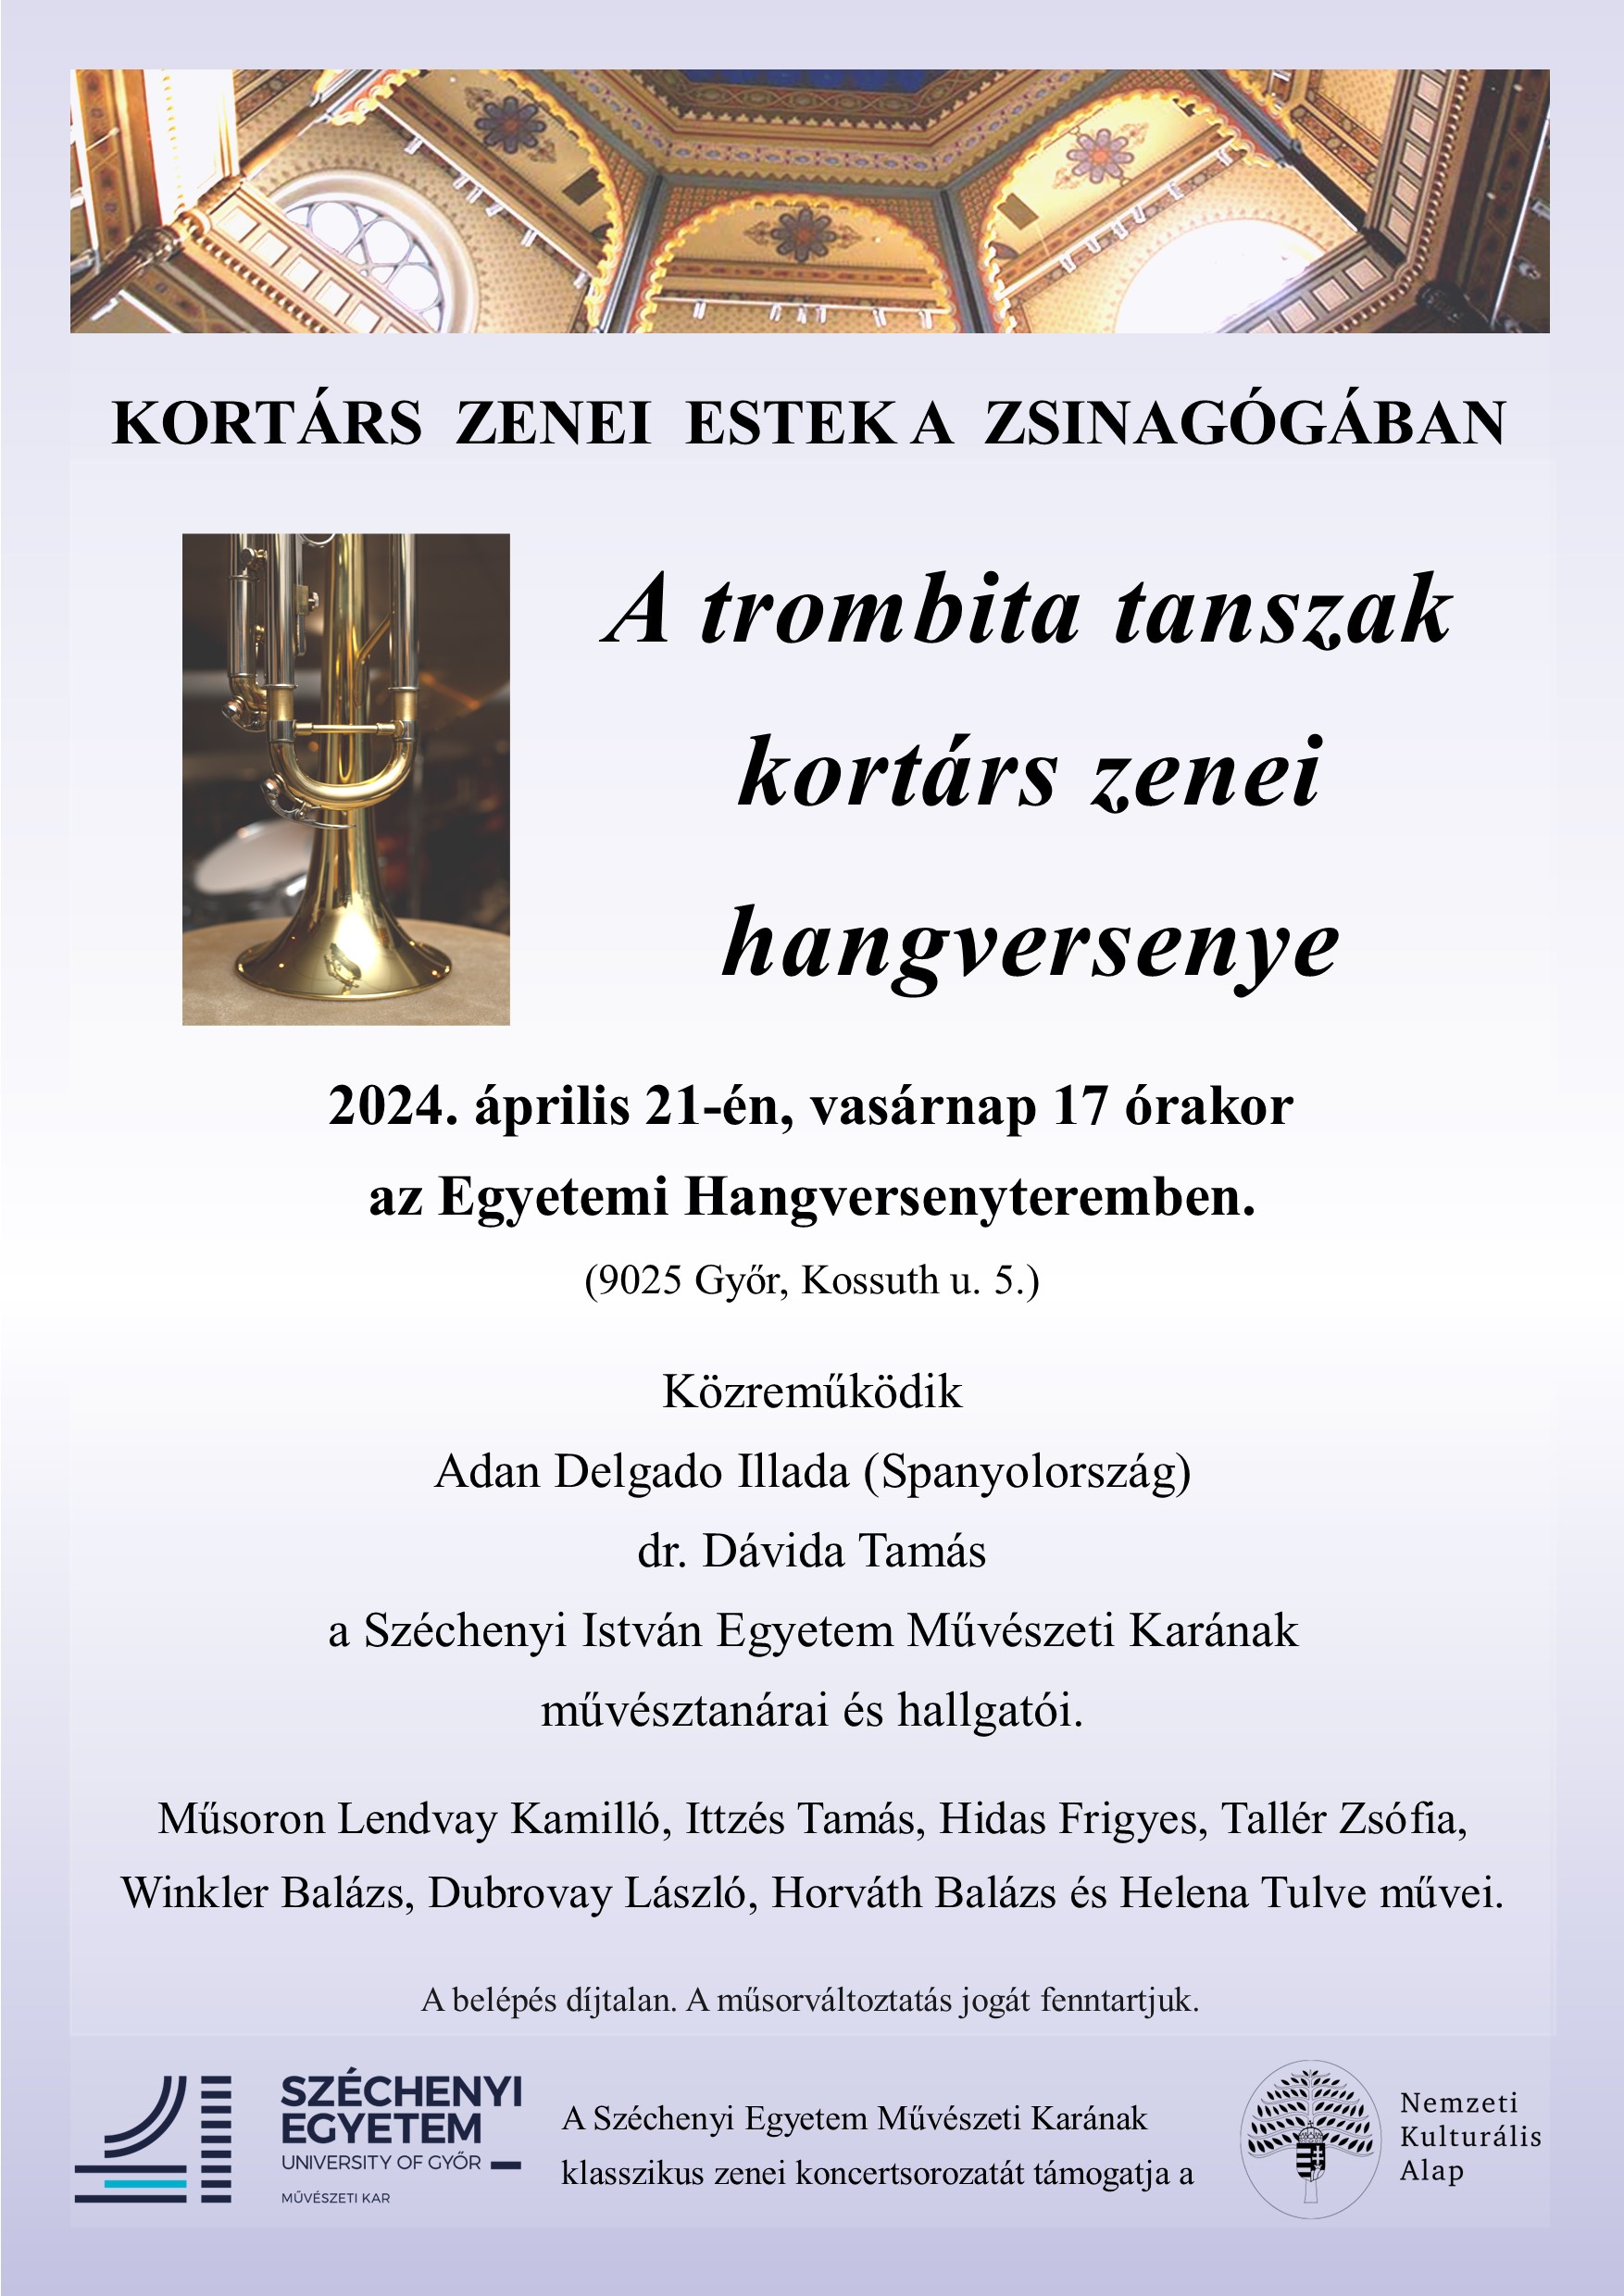 Trombita tanszak hangversenye - Kortárs zenei estek a Zsinagógában - 2024.04.21.